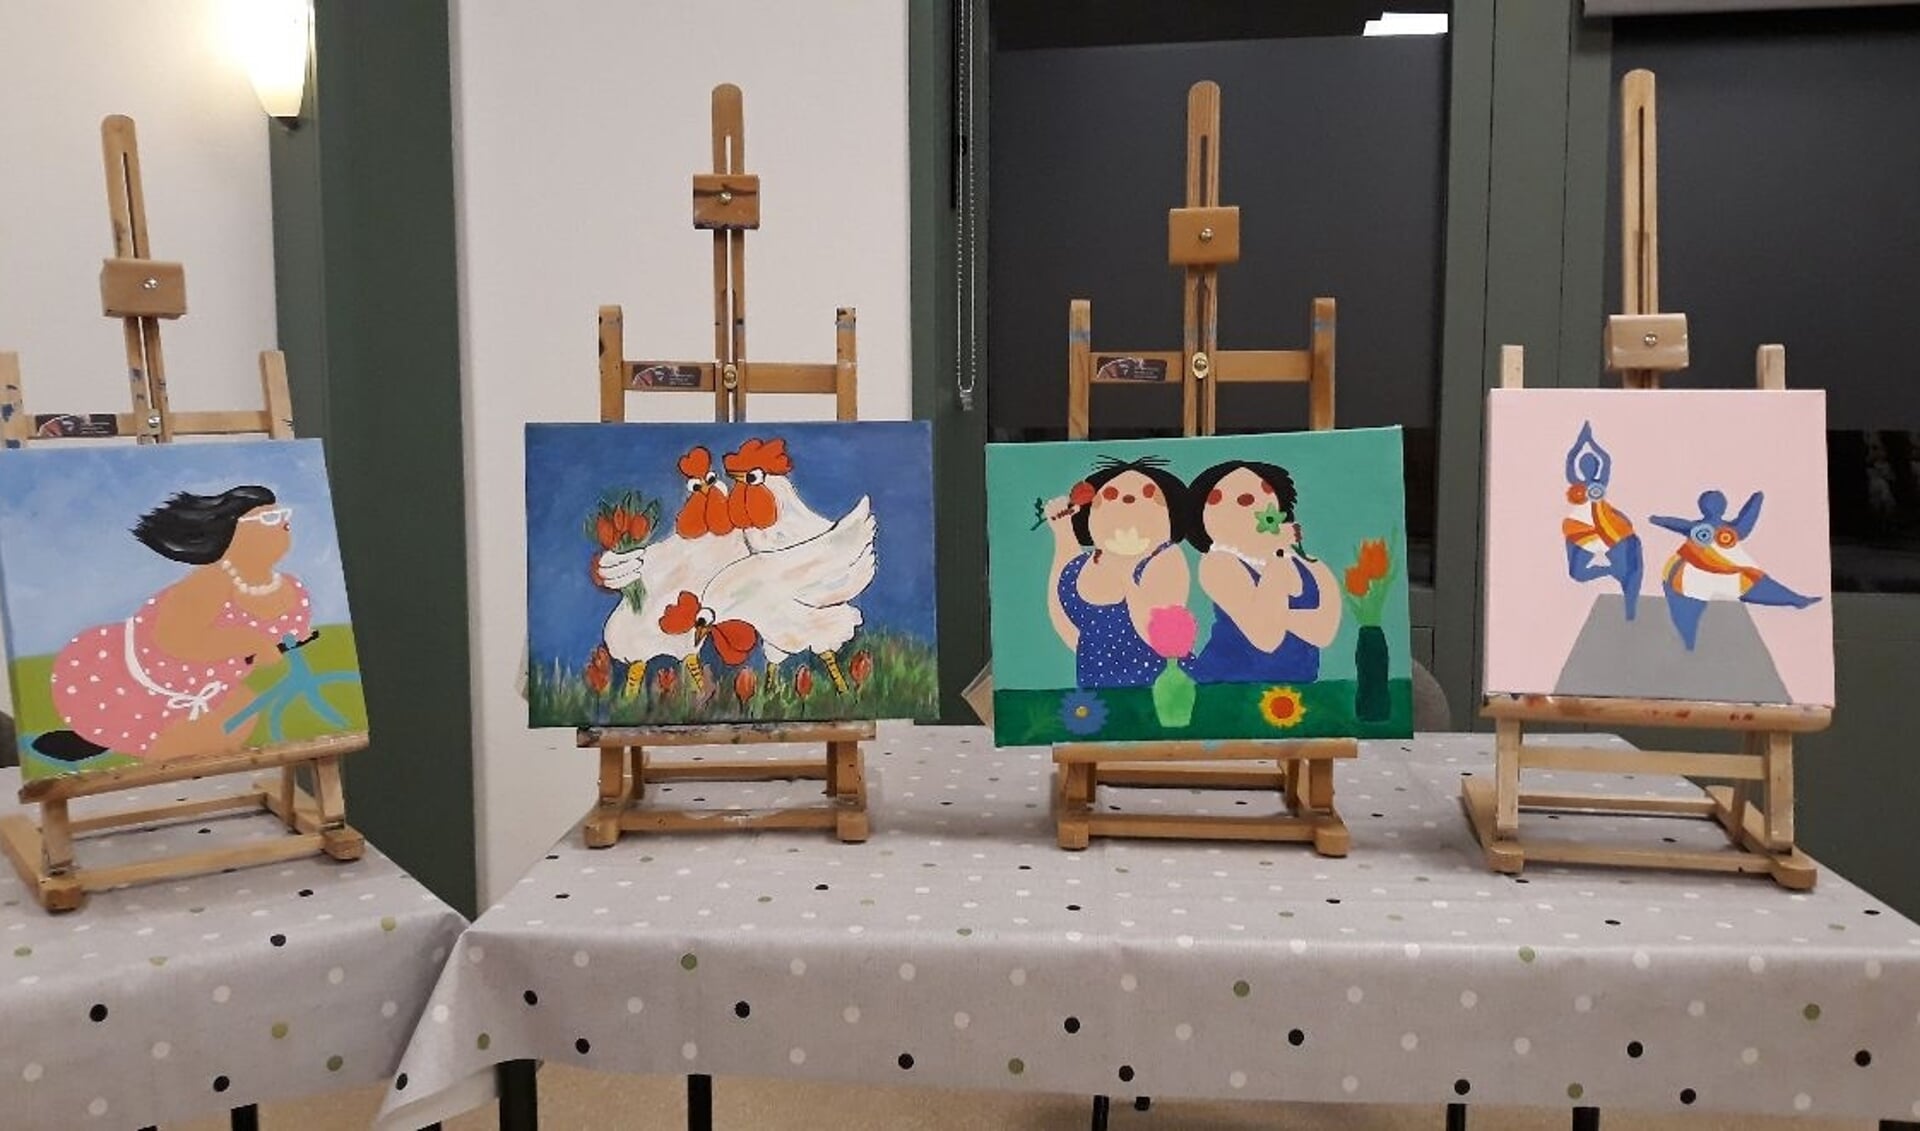 In januari begint ook een schildercursus voor volwassenen. Dit zijn geen voorbeelden van eerdere schilderijen.